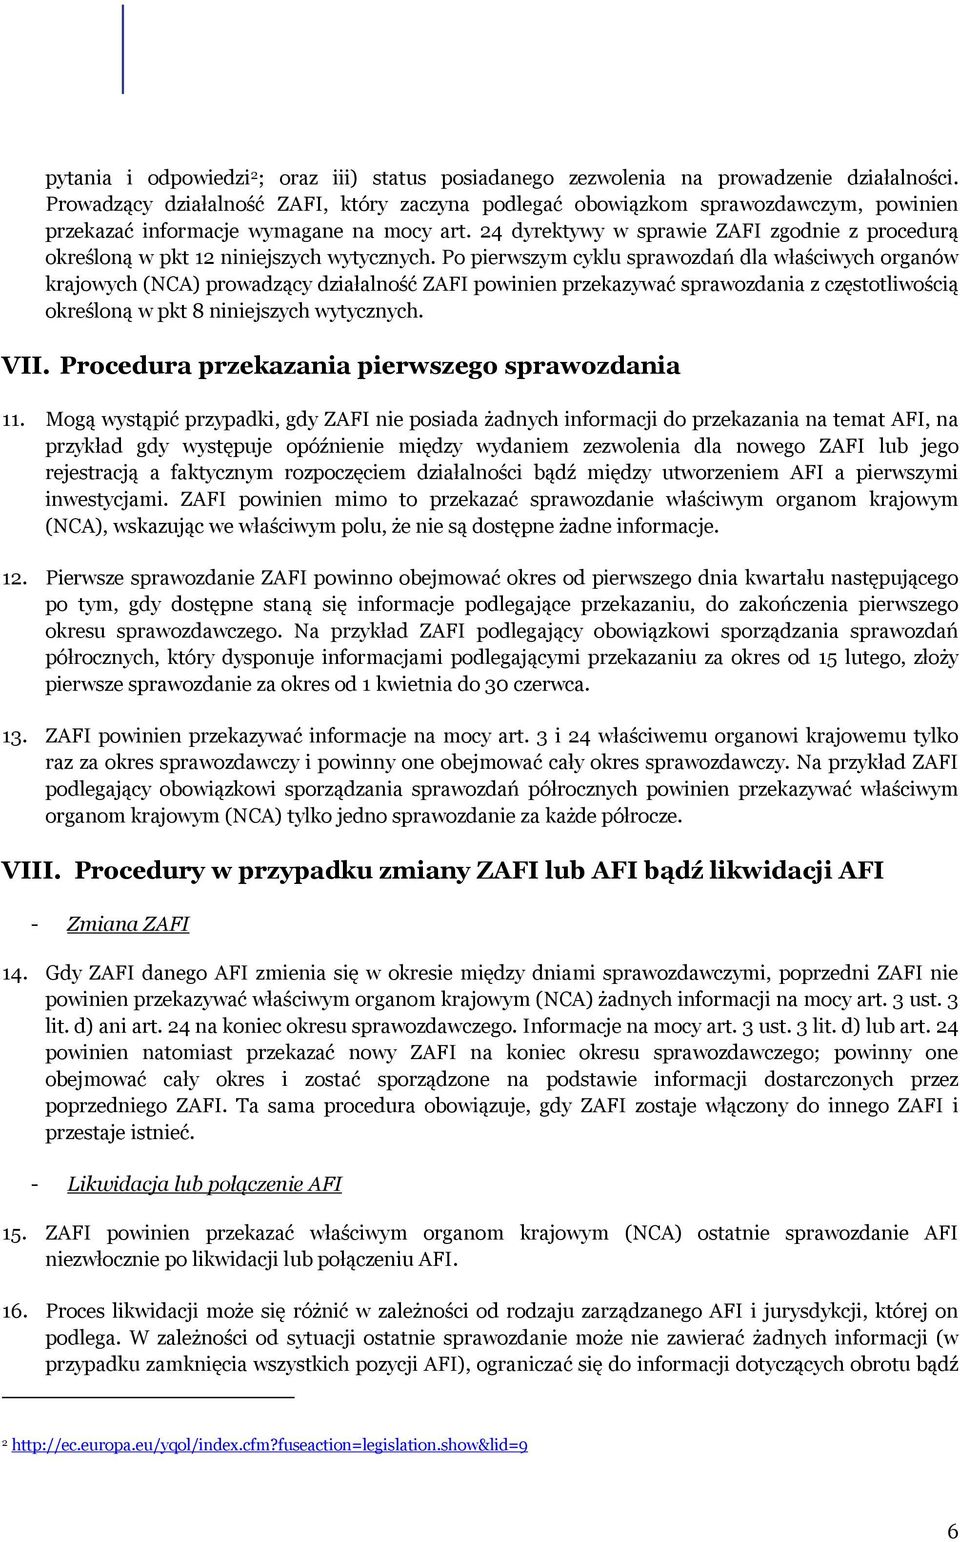 24 dyrektywy w sprawie ZAFI zgodnie z procedurą określoną w pkt 12 niniejszych wytycznych.